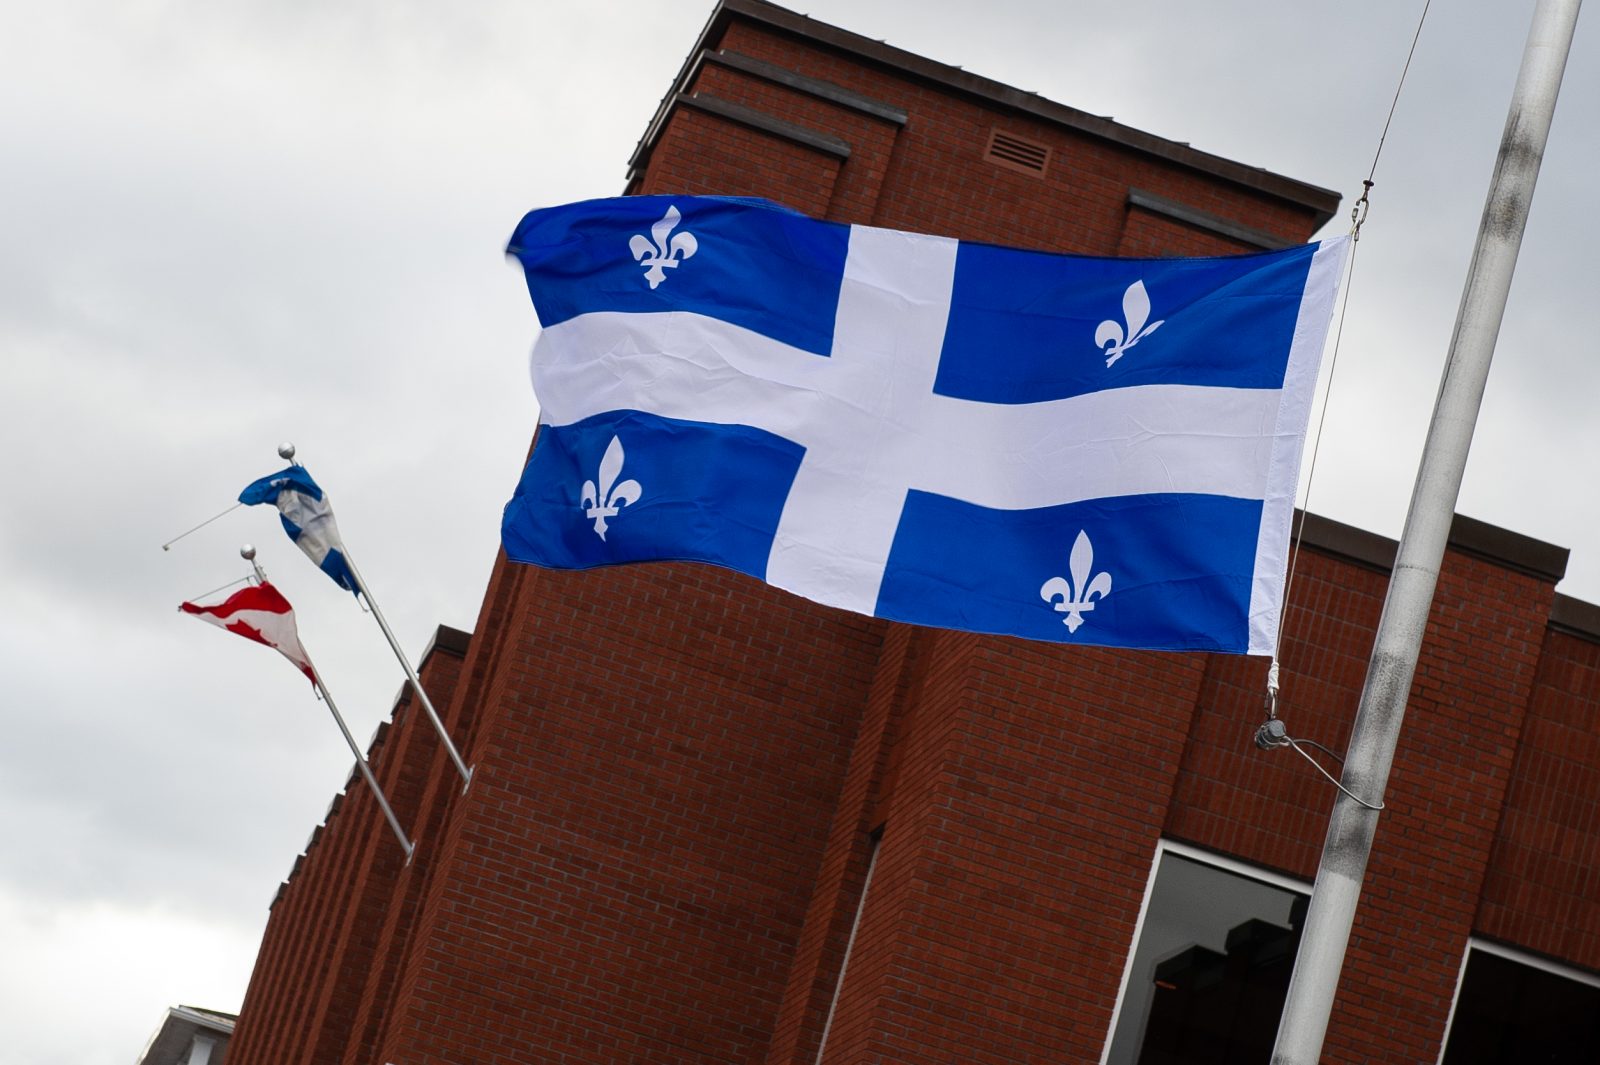 Décès de Bernard Landry: l’UMQ salue sa contribution au développement du Québec